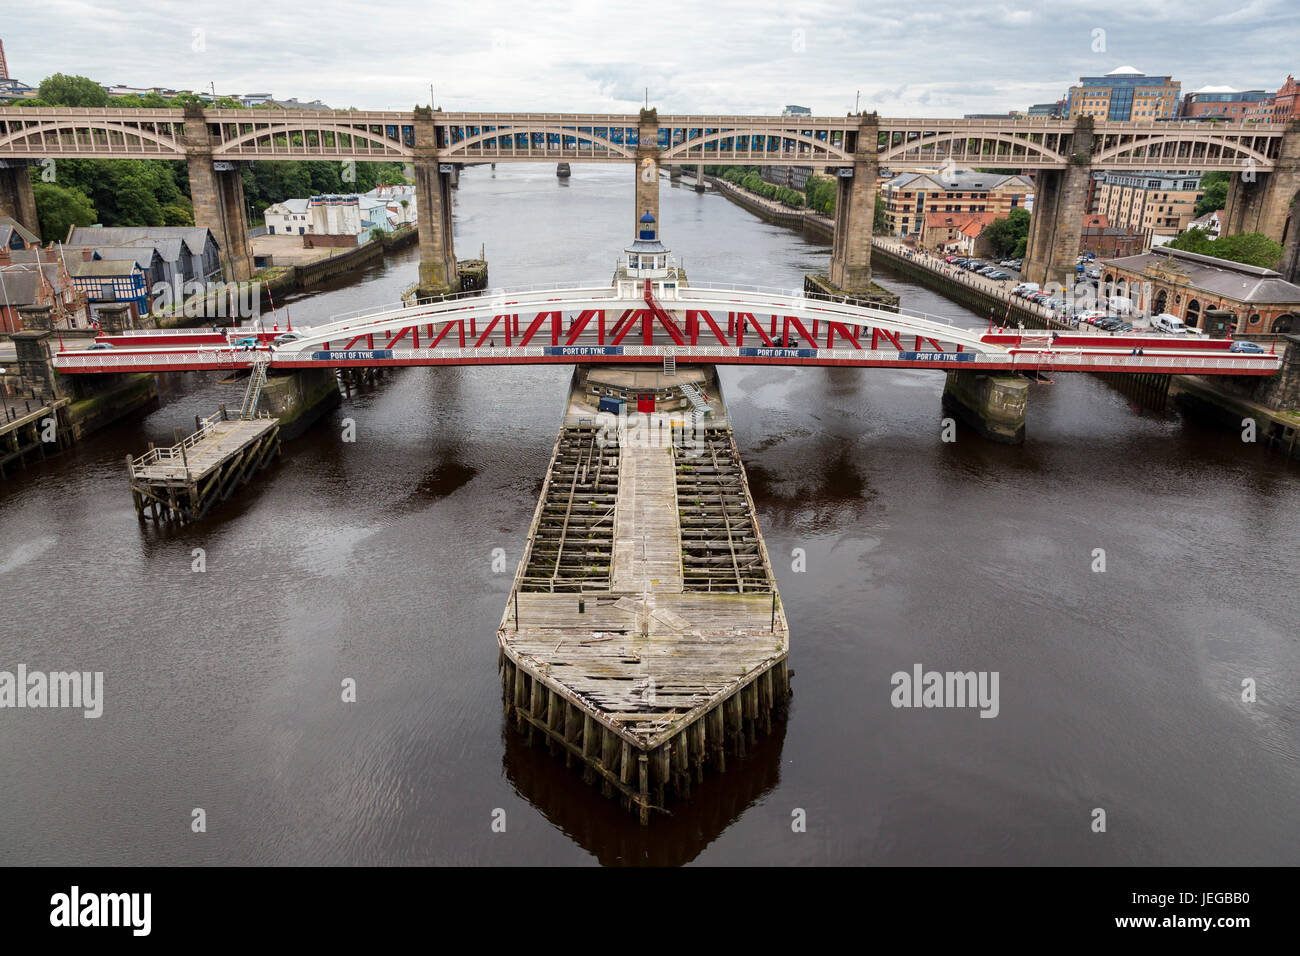 Newcastle-upon-Tyne, England, UK.  Swing Bridge in Middle Ground, High Level Bridge in Background, linking Gateshead to Newcastle. Stock Photo